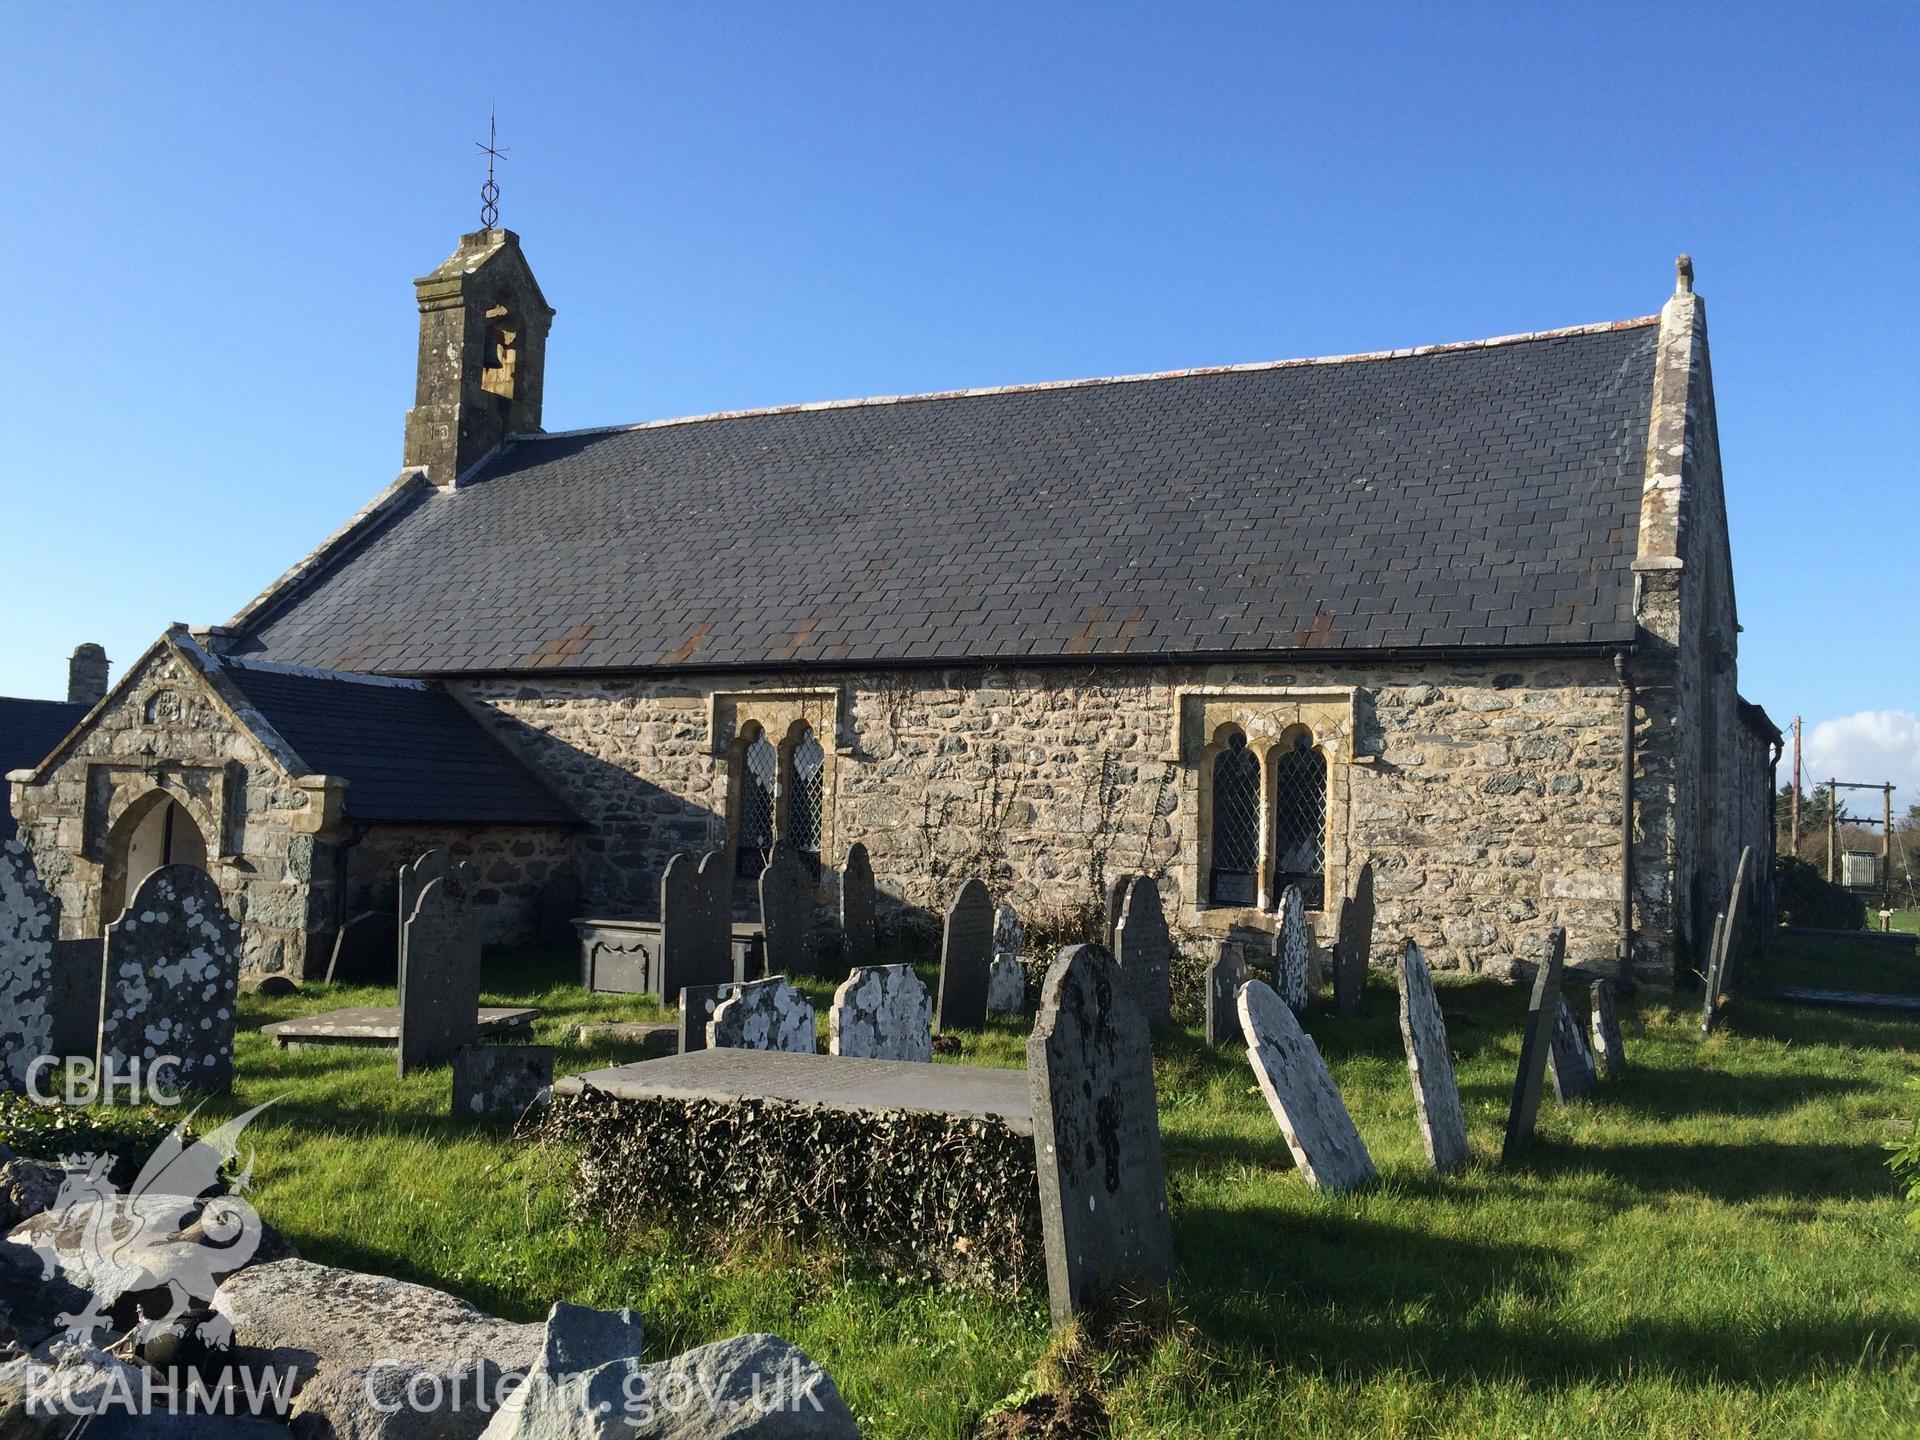 Colour photo showing Llanddwywe Church,  produced by Paul R. Davis, 12th March 2017.